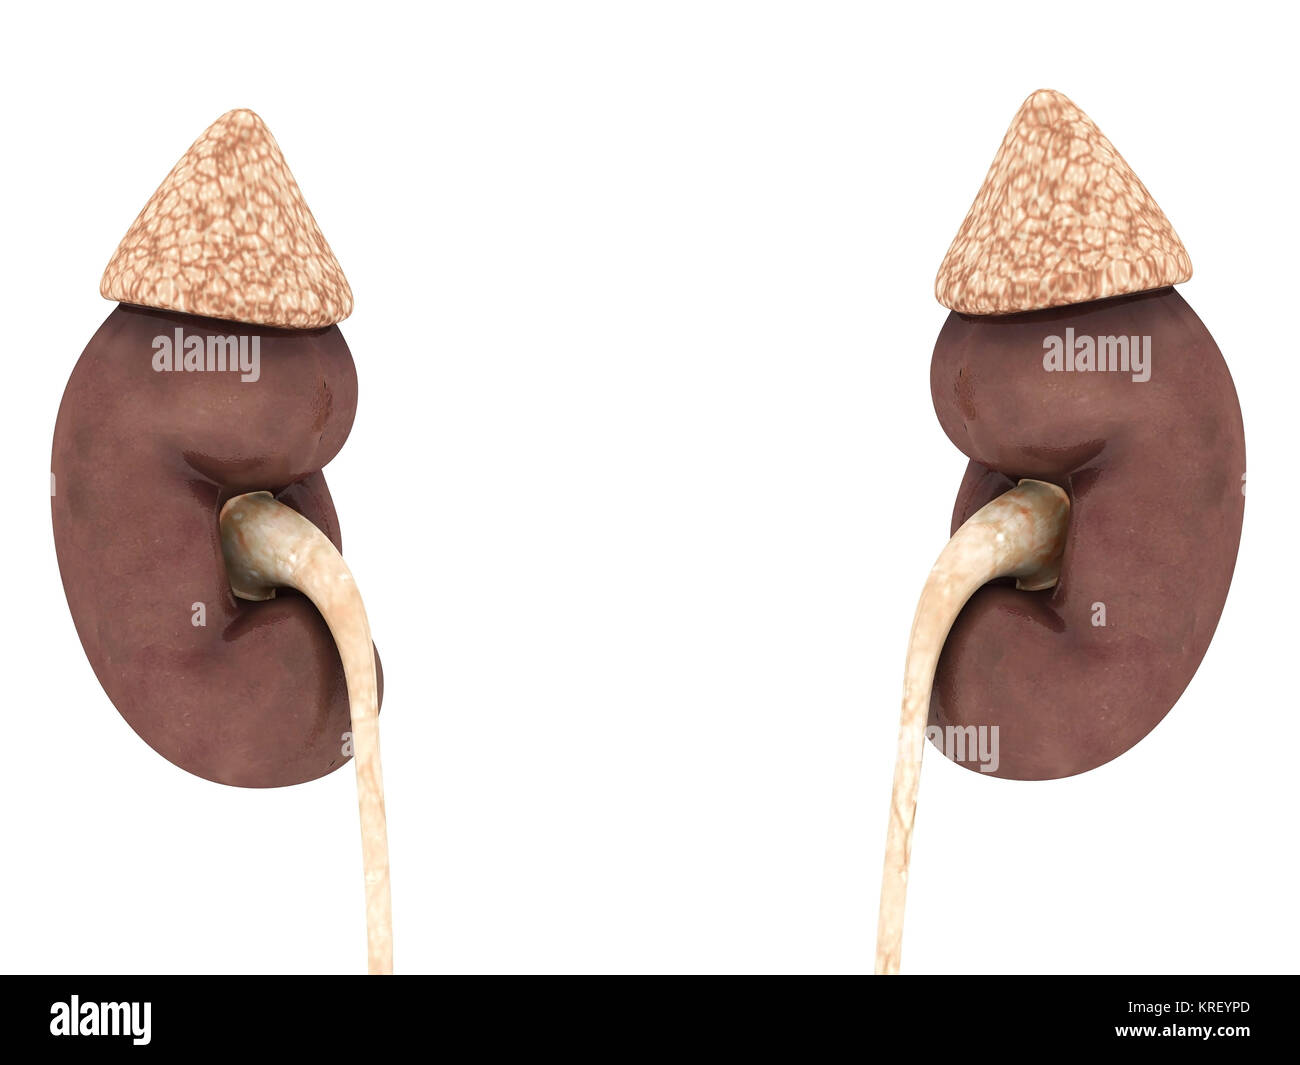 kidney model isolated on white background Stock Photo - Alamy